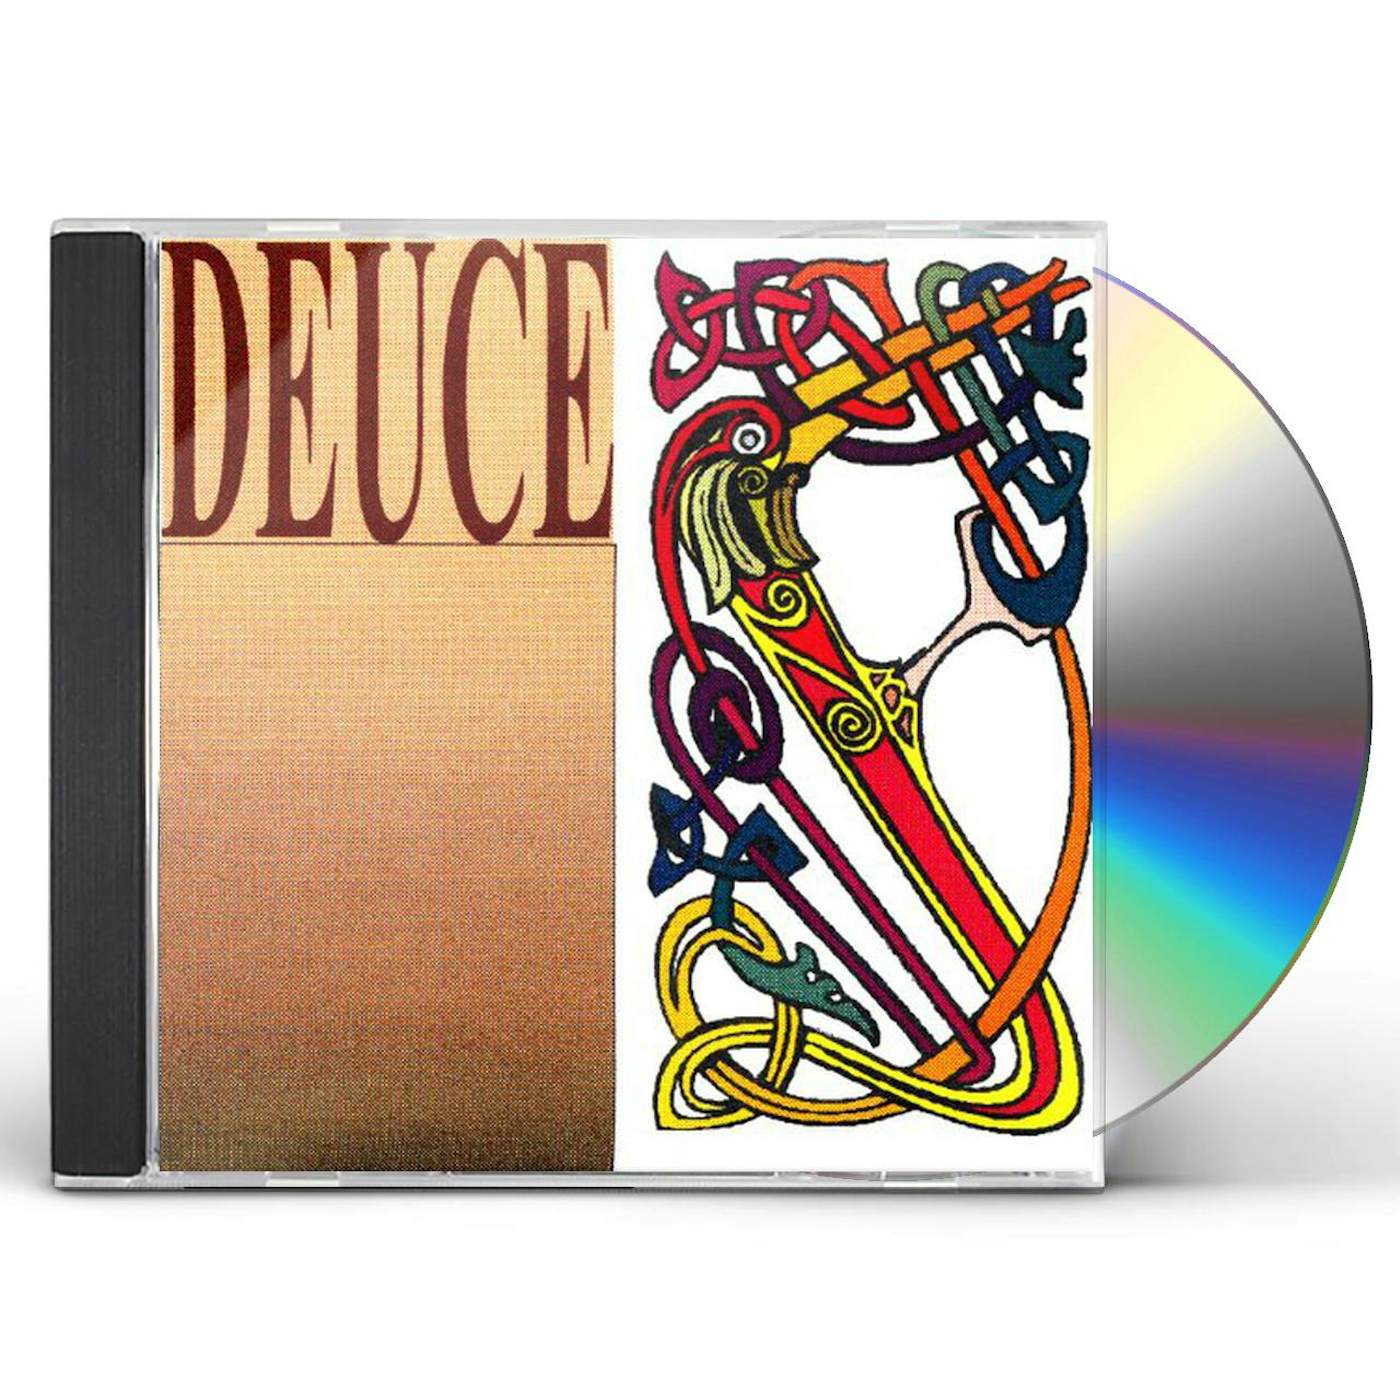 DEUCE CD